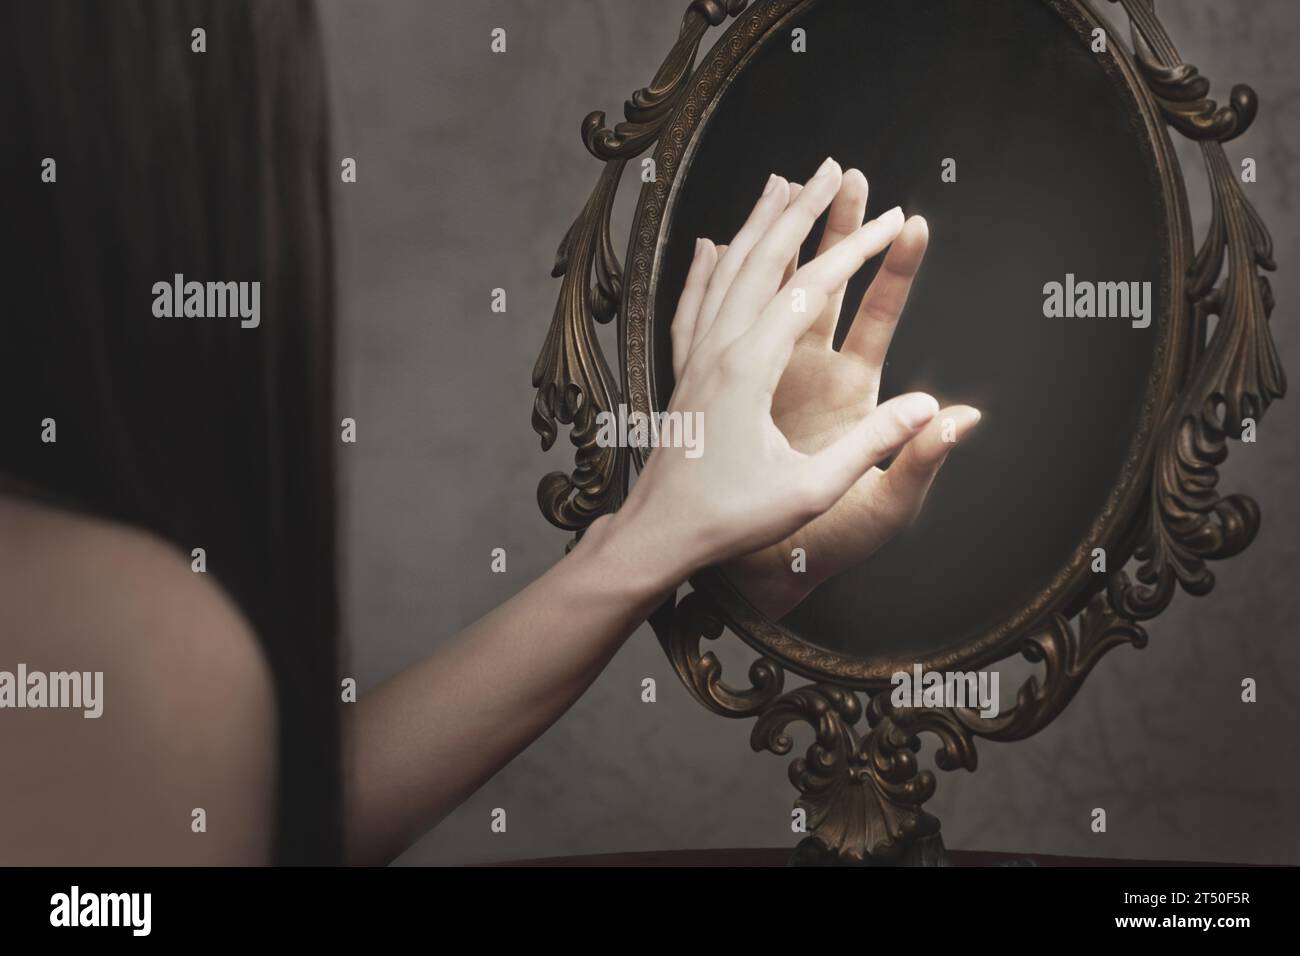 la donna tocca il riflesso della sua mano su uno specchio, concetto astratto Foto Stock